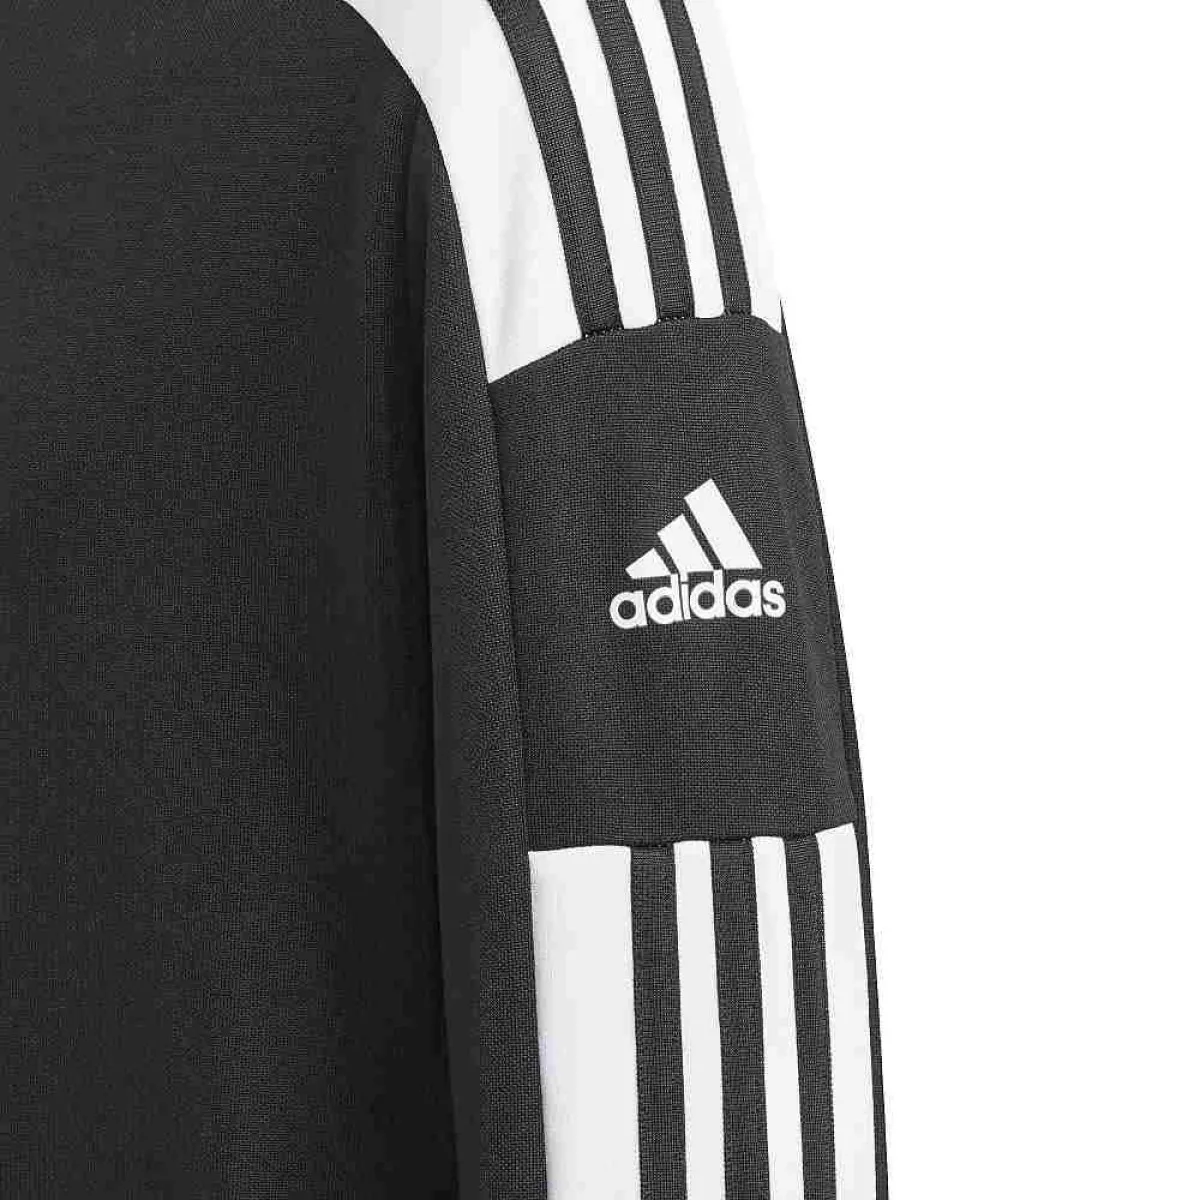 adidas Squadra 21 Kinder Trainingsjacke schwarz/weiß